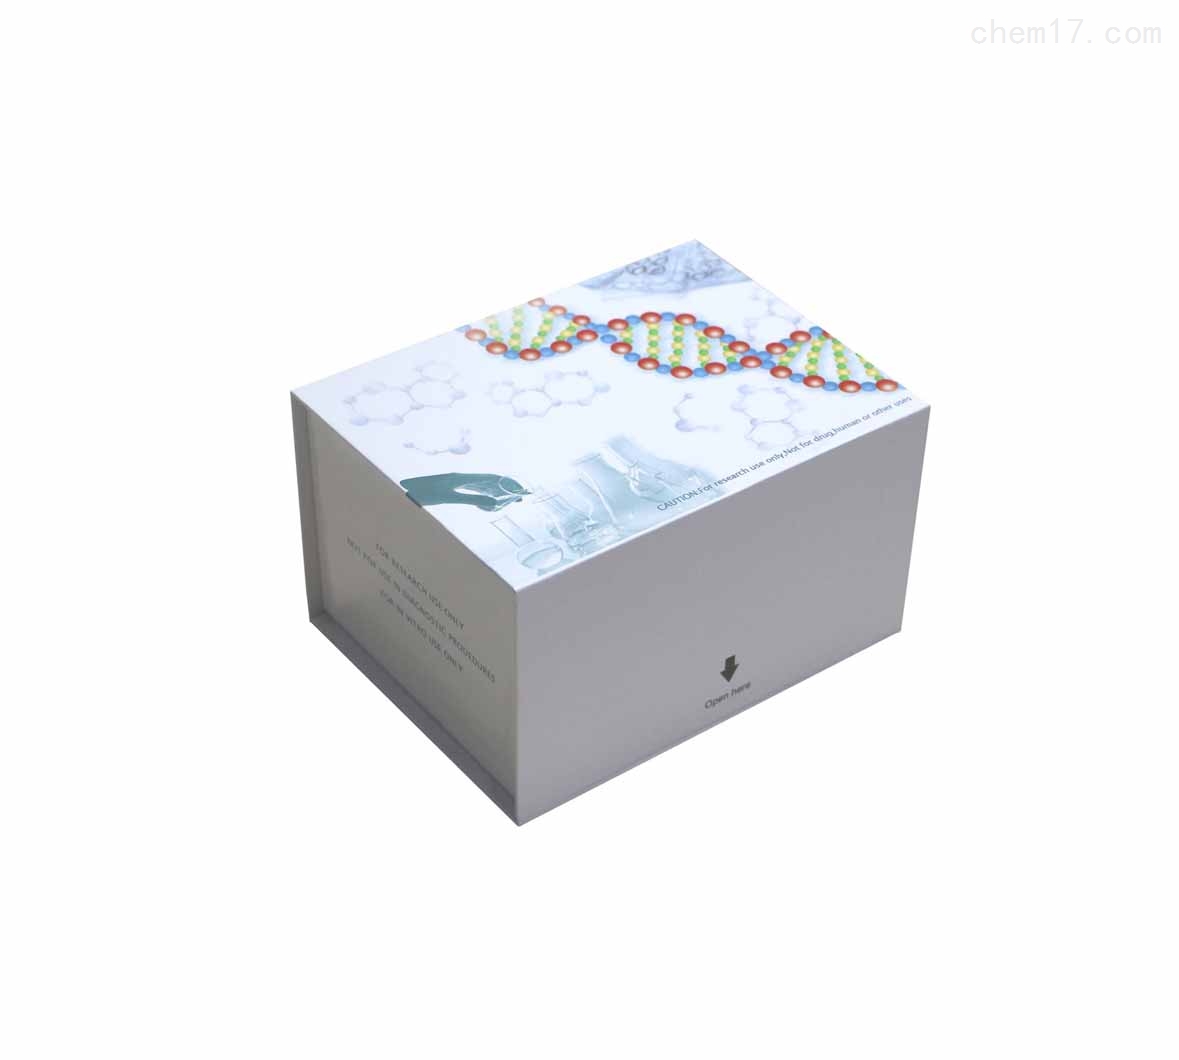 人硬骨素(SOST)ELISA试剂盒质量保证